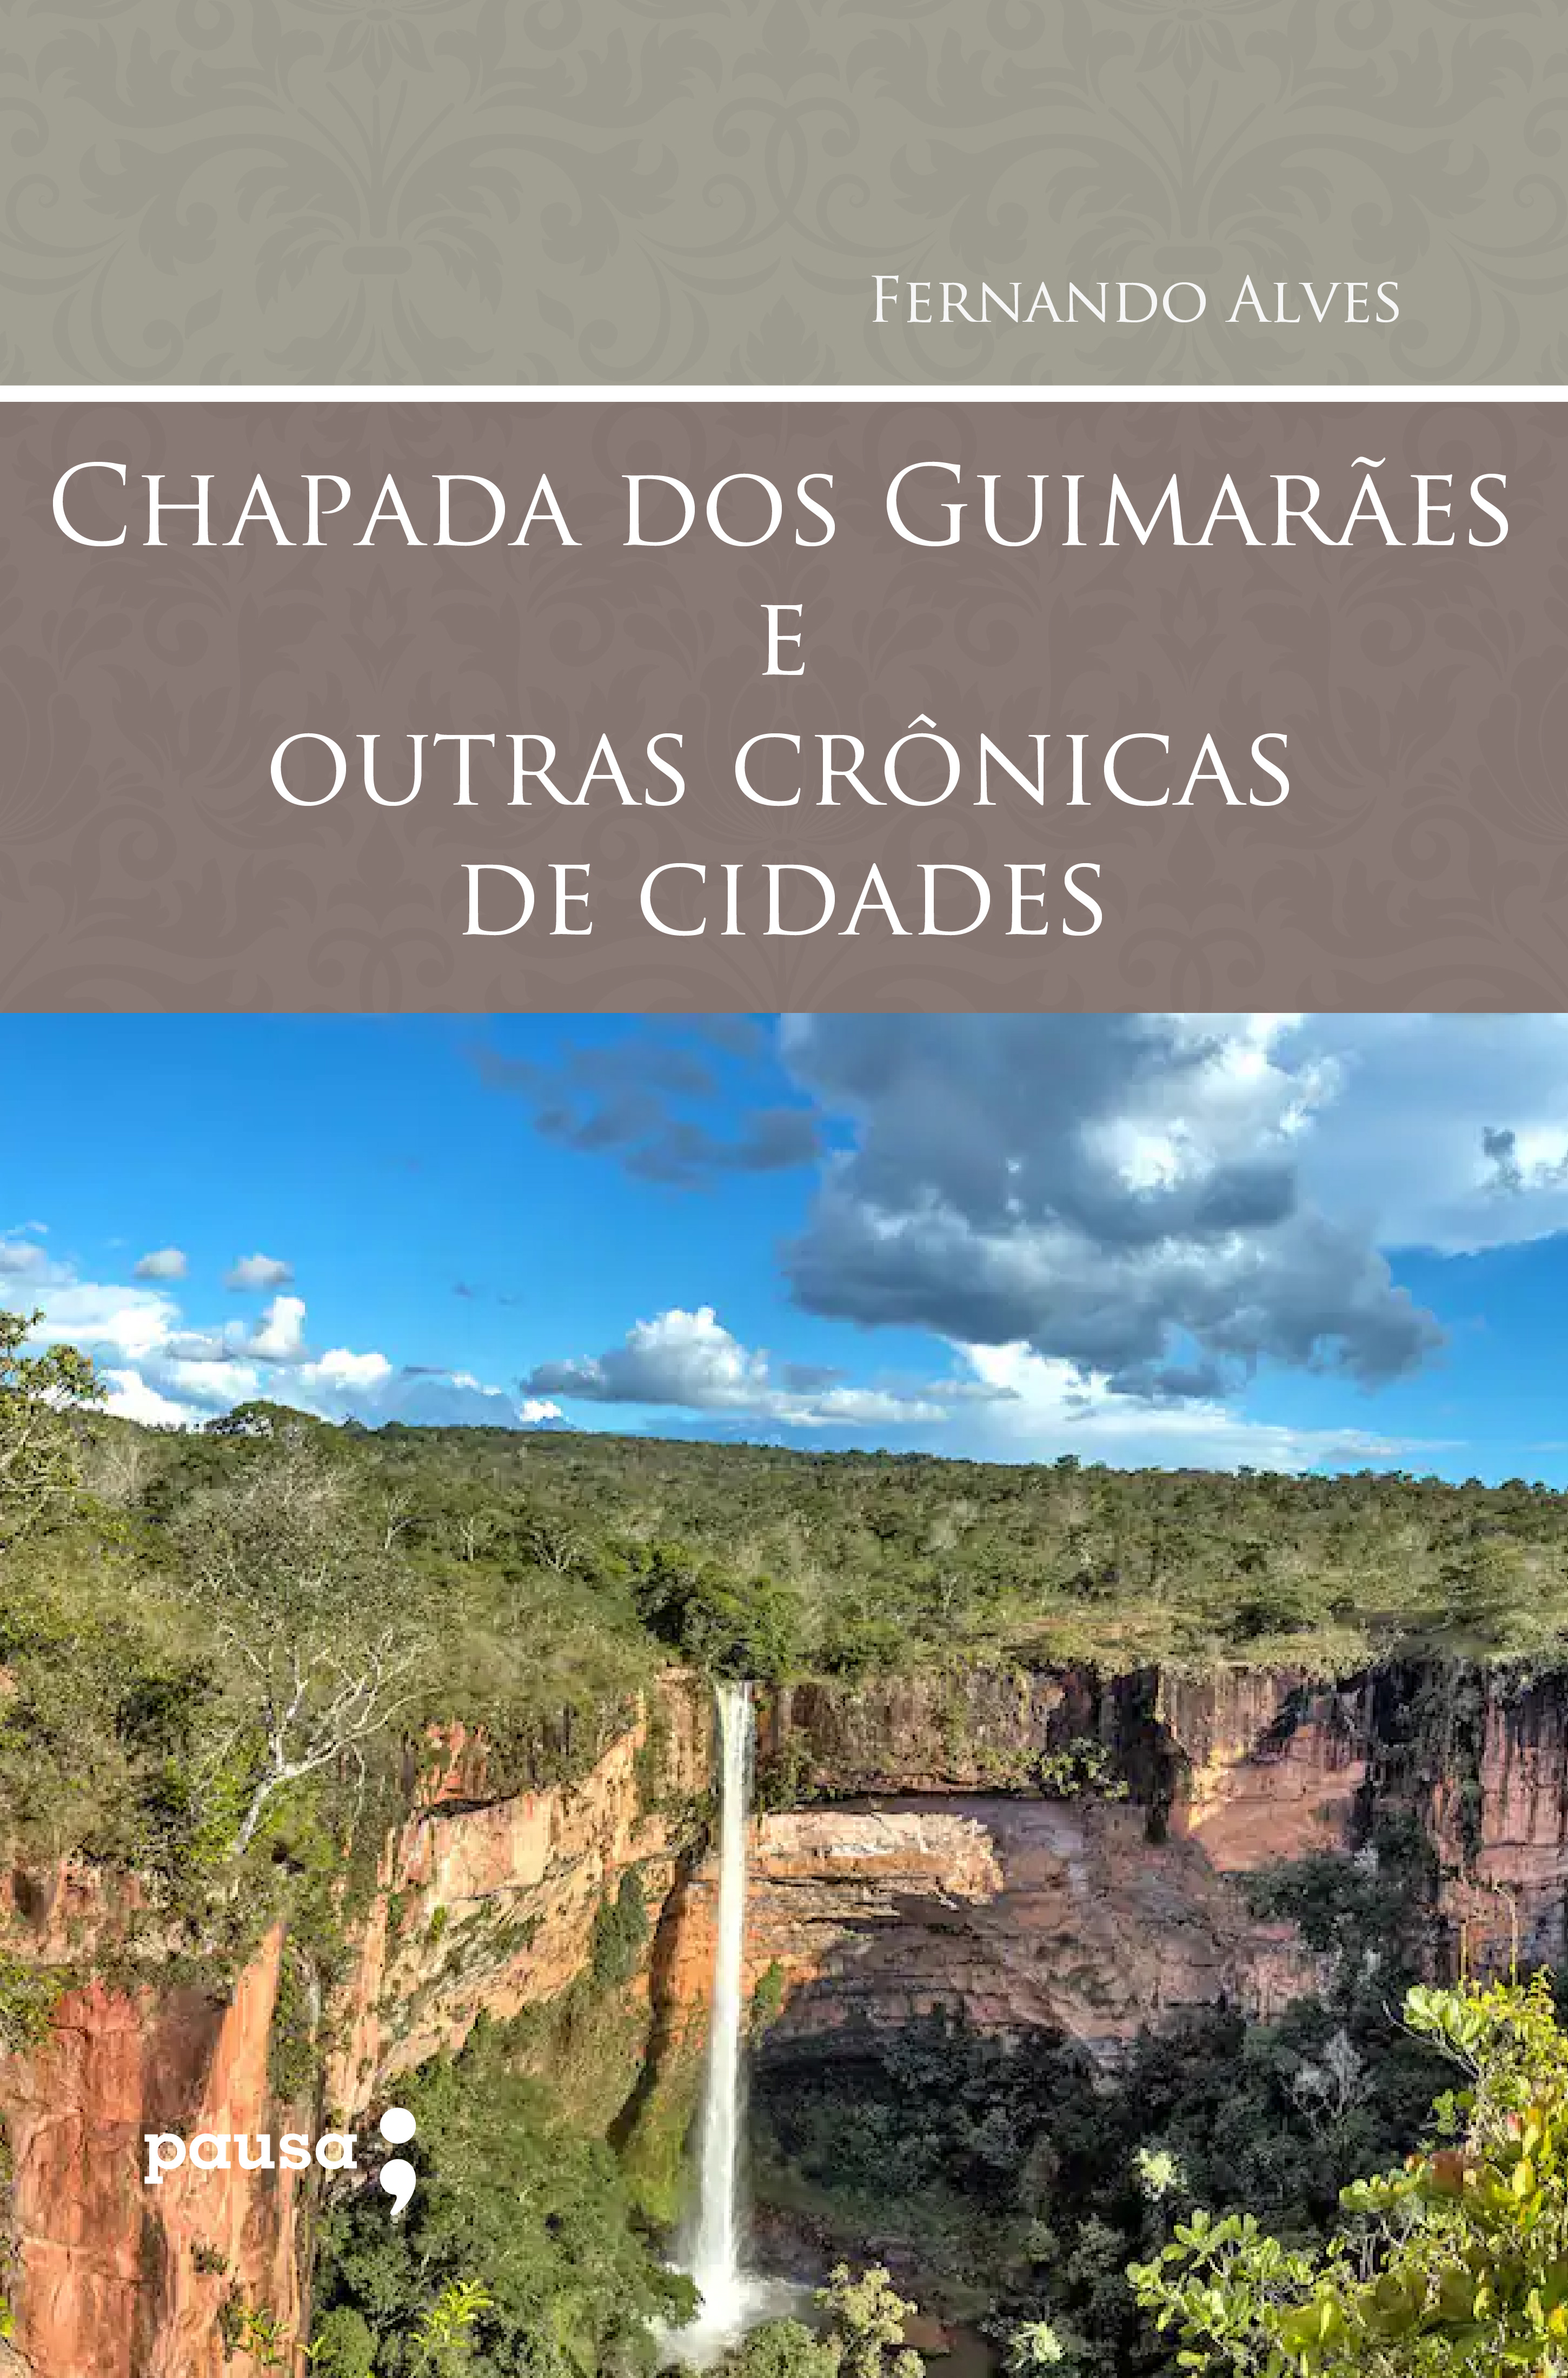 Chapada dos Guimarães e outras crônicas de cidades